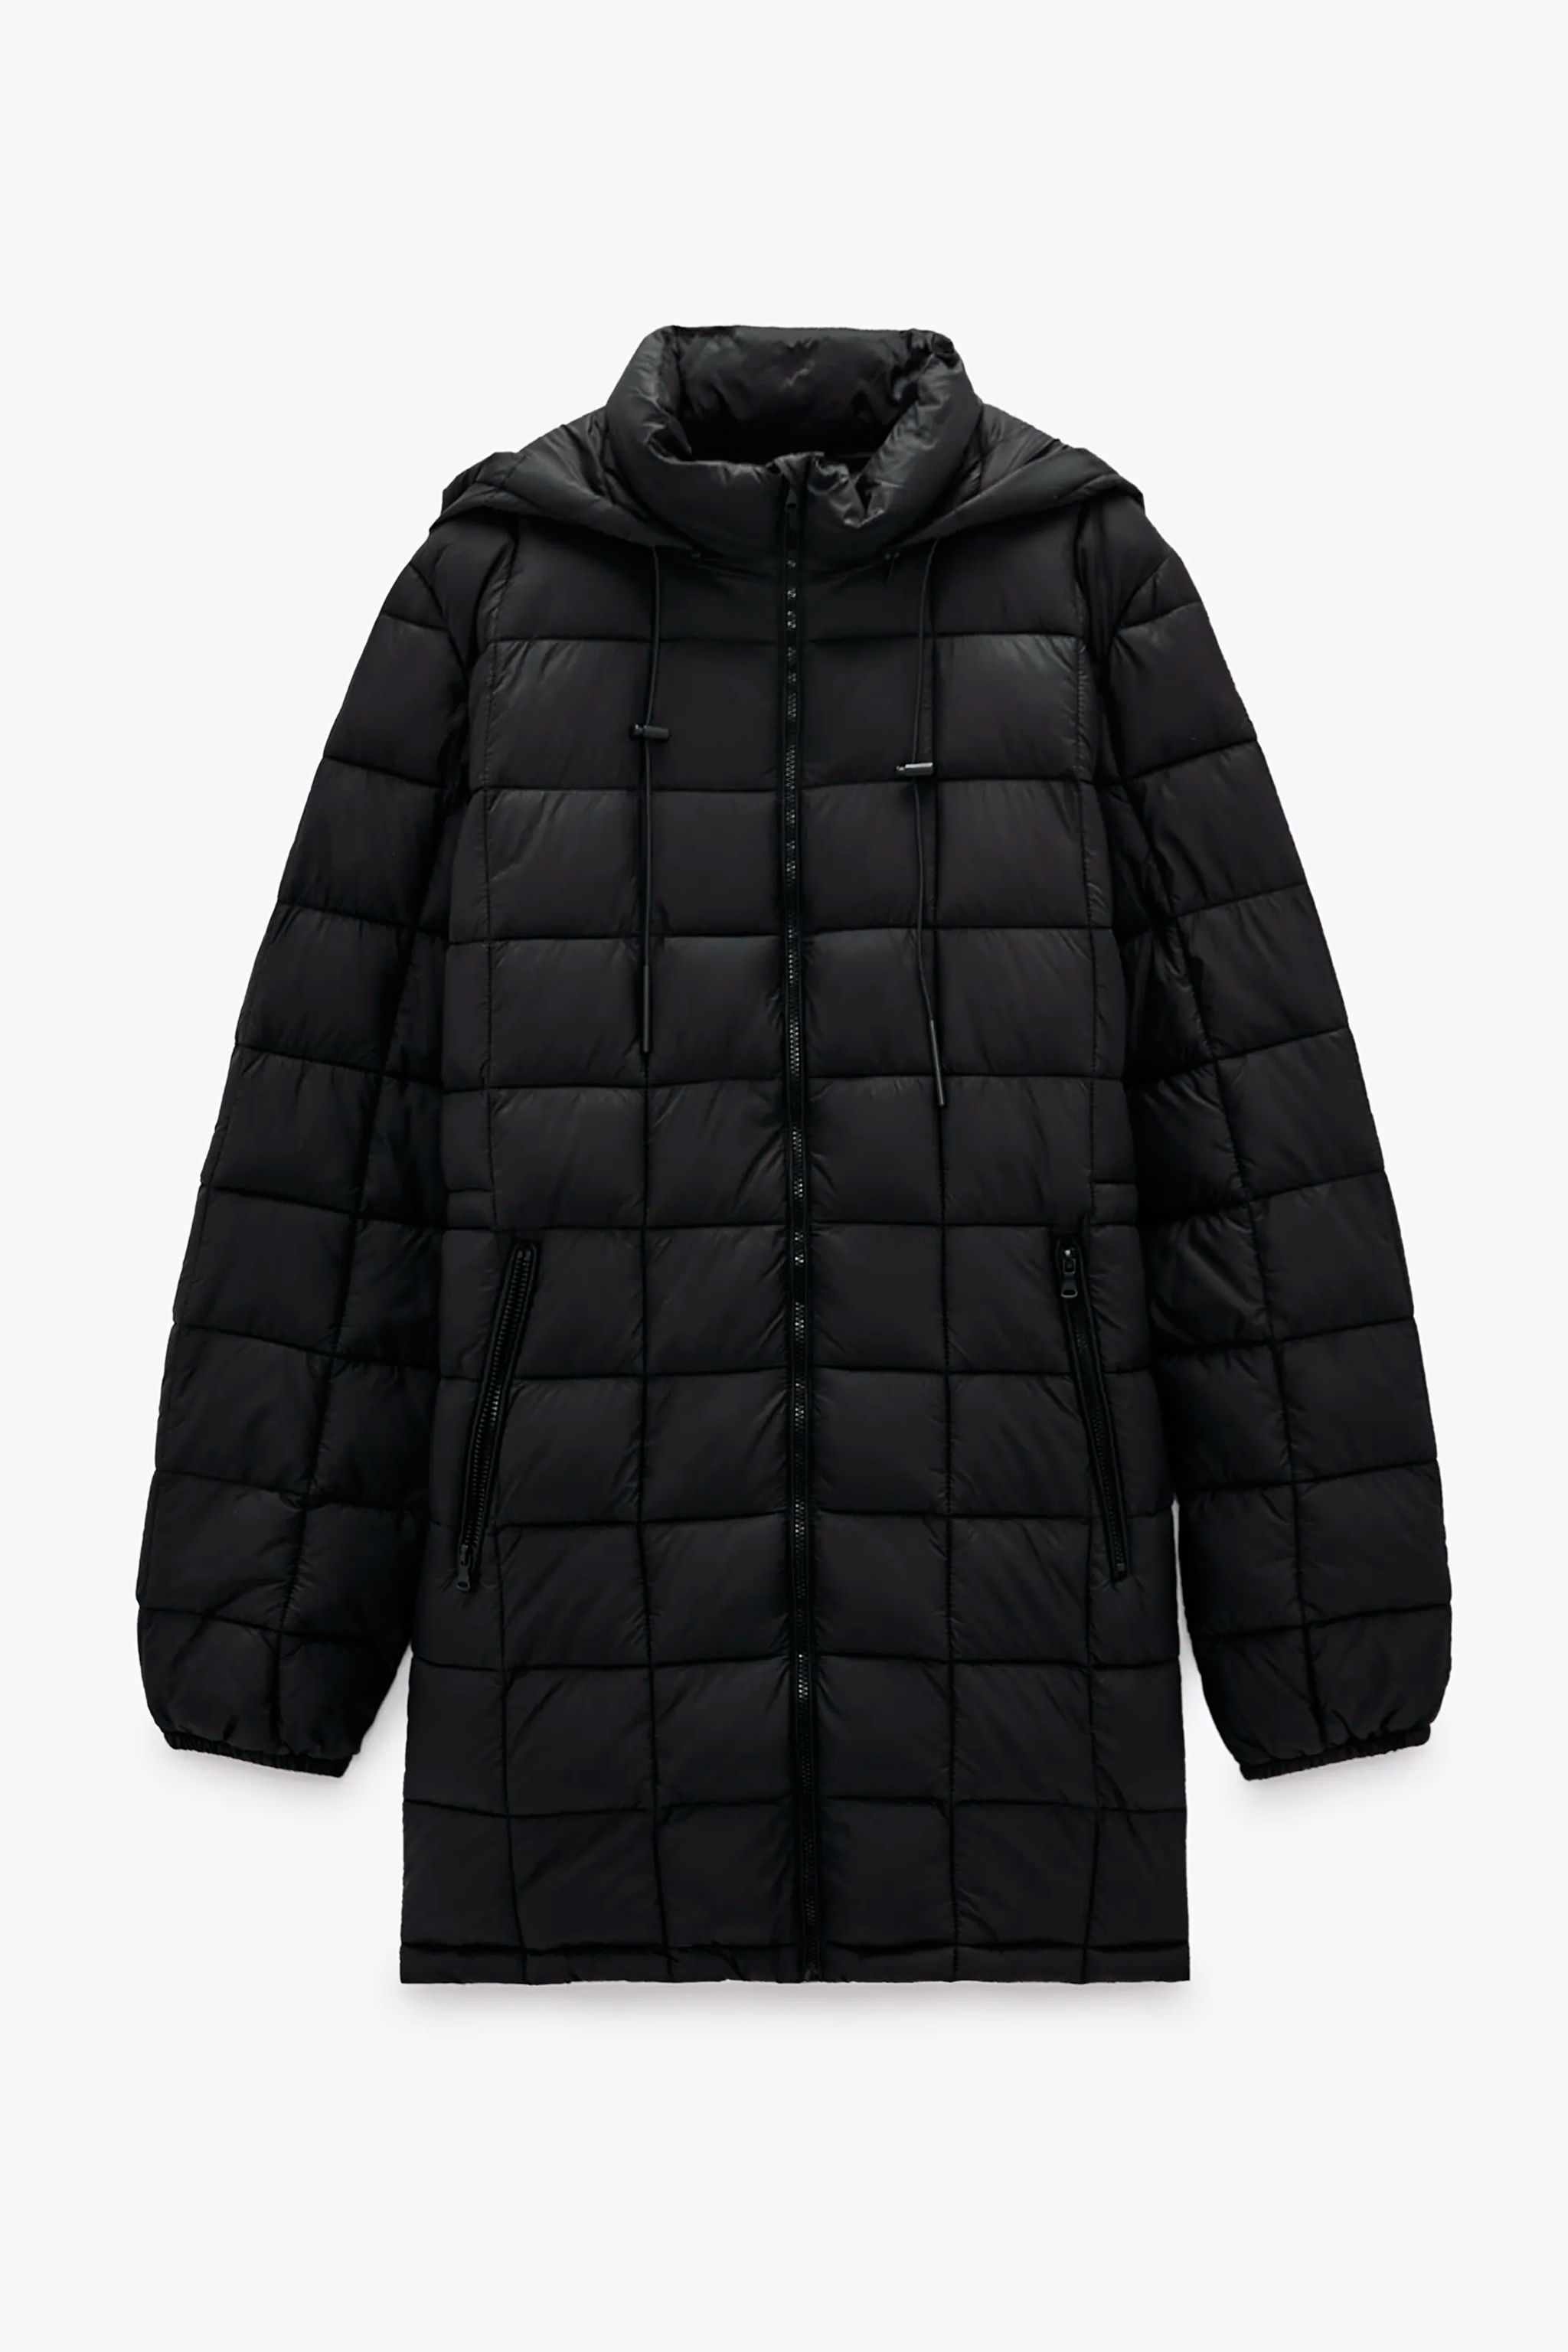 El abrigo plumífero negro sostenible de Zara que arrasa en ventas